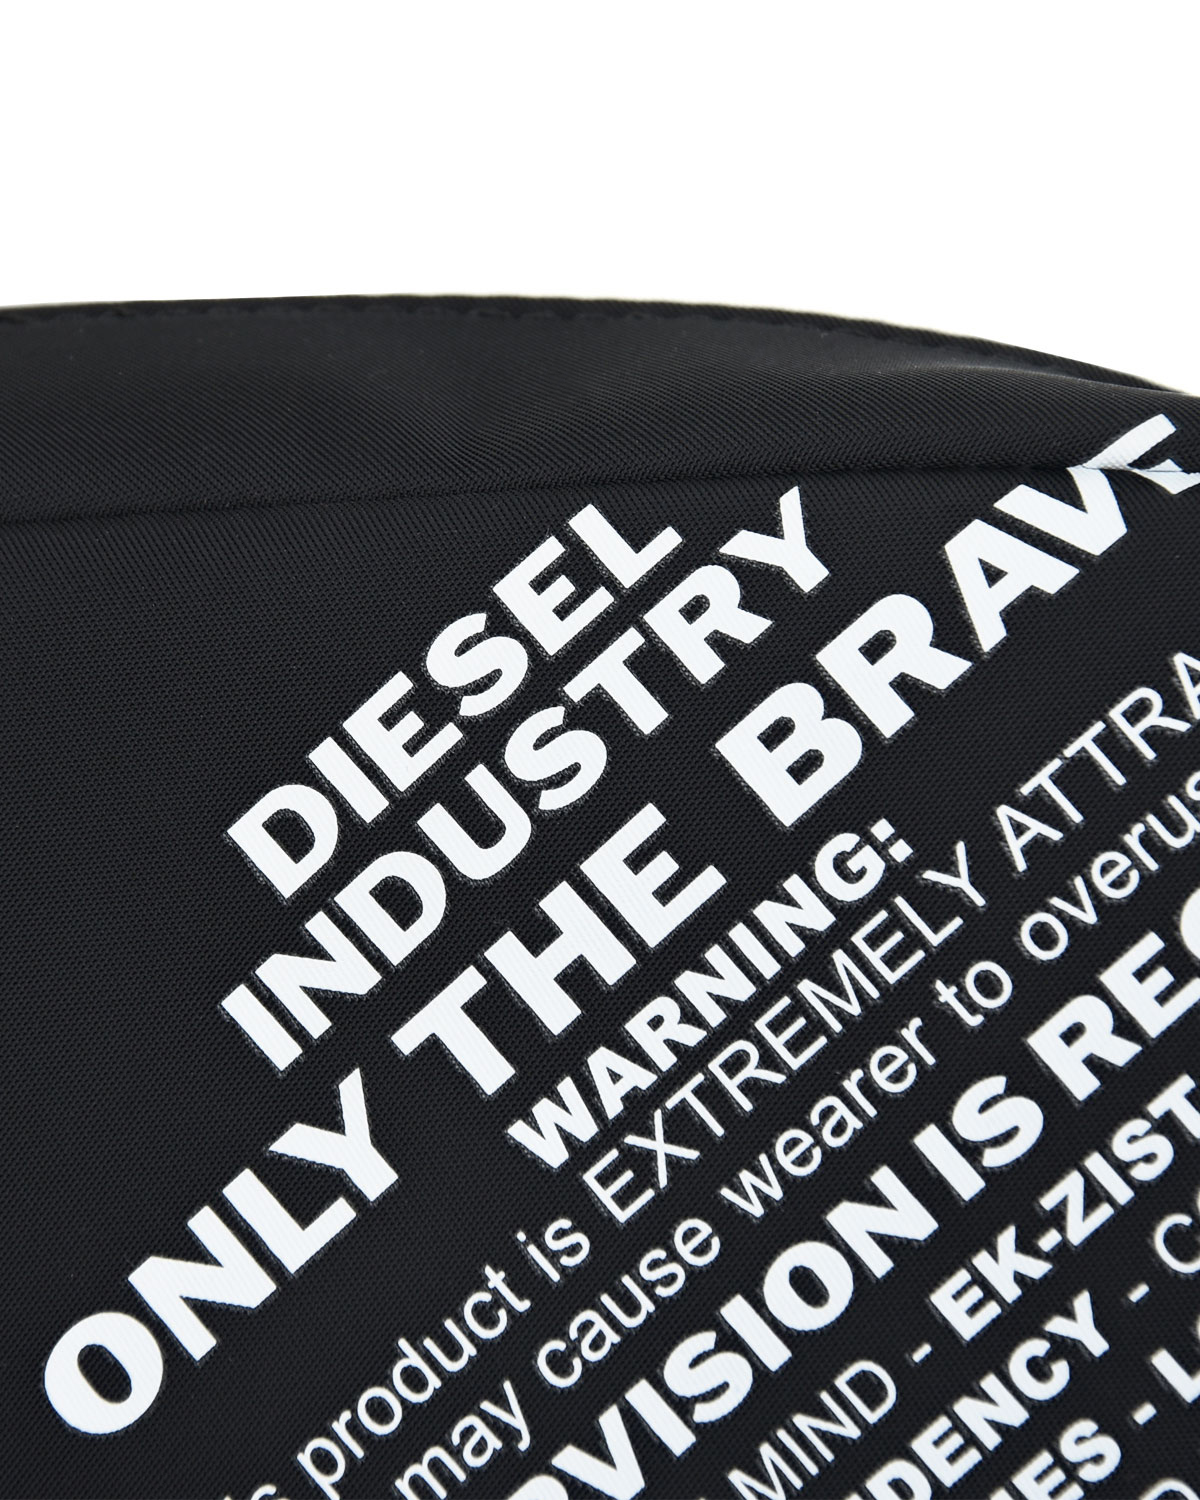 Черная сумка-пояс с надписями, 17x13x4 см Diesel детская, размер unica, цвет черный - фото 4